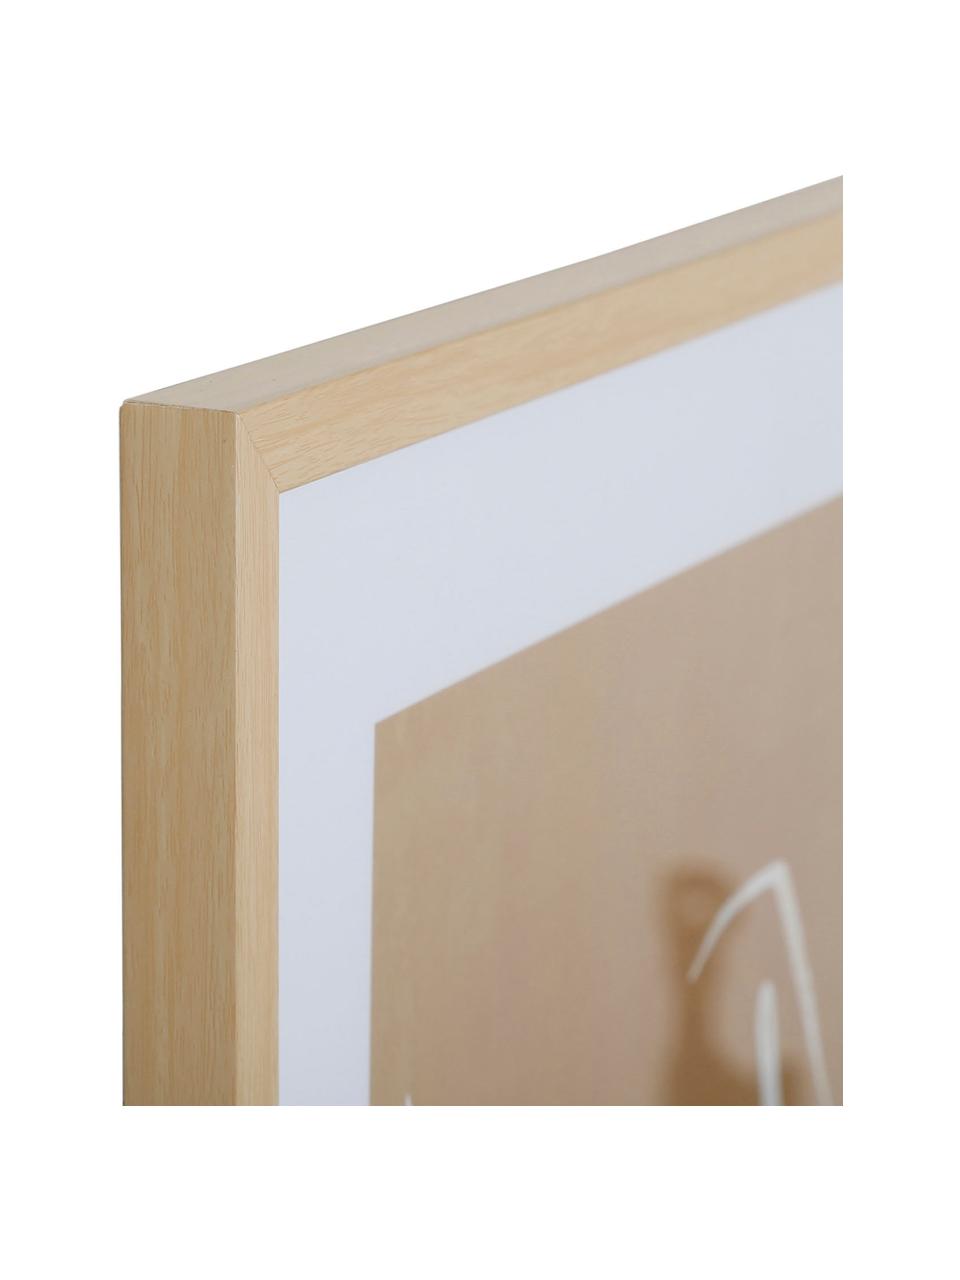 Gerahmter Digitaldruck Femme, Rahmen: Mitteldichte Holzfaserpla, Bild: Papier, Front: Glas, Beige, B 52 x H 72 cm